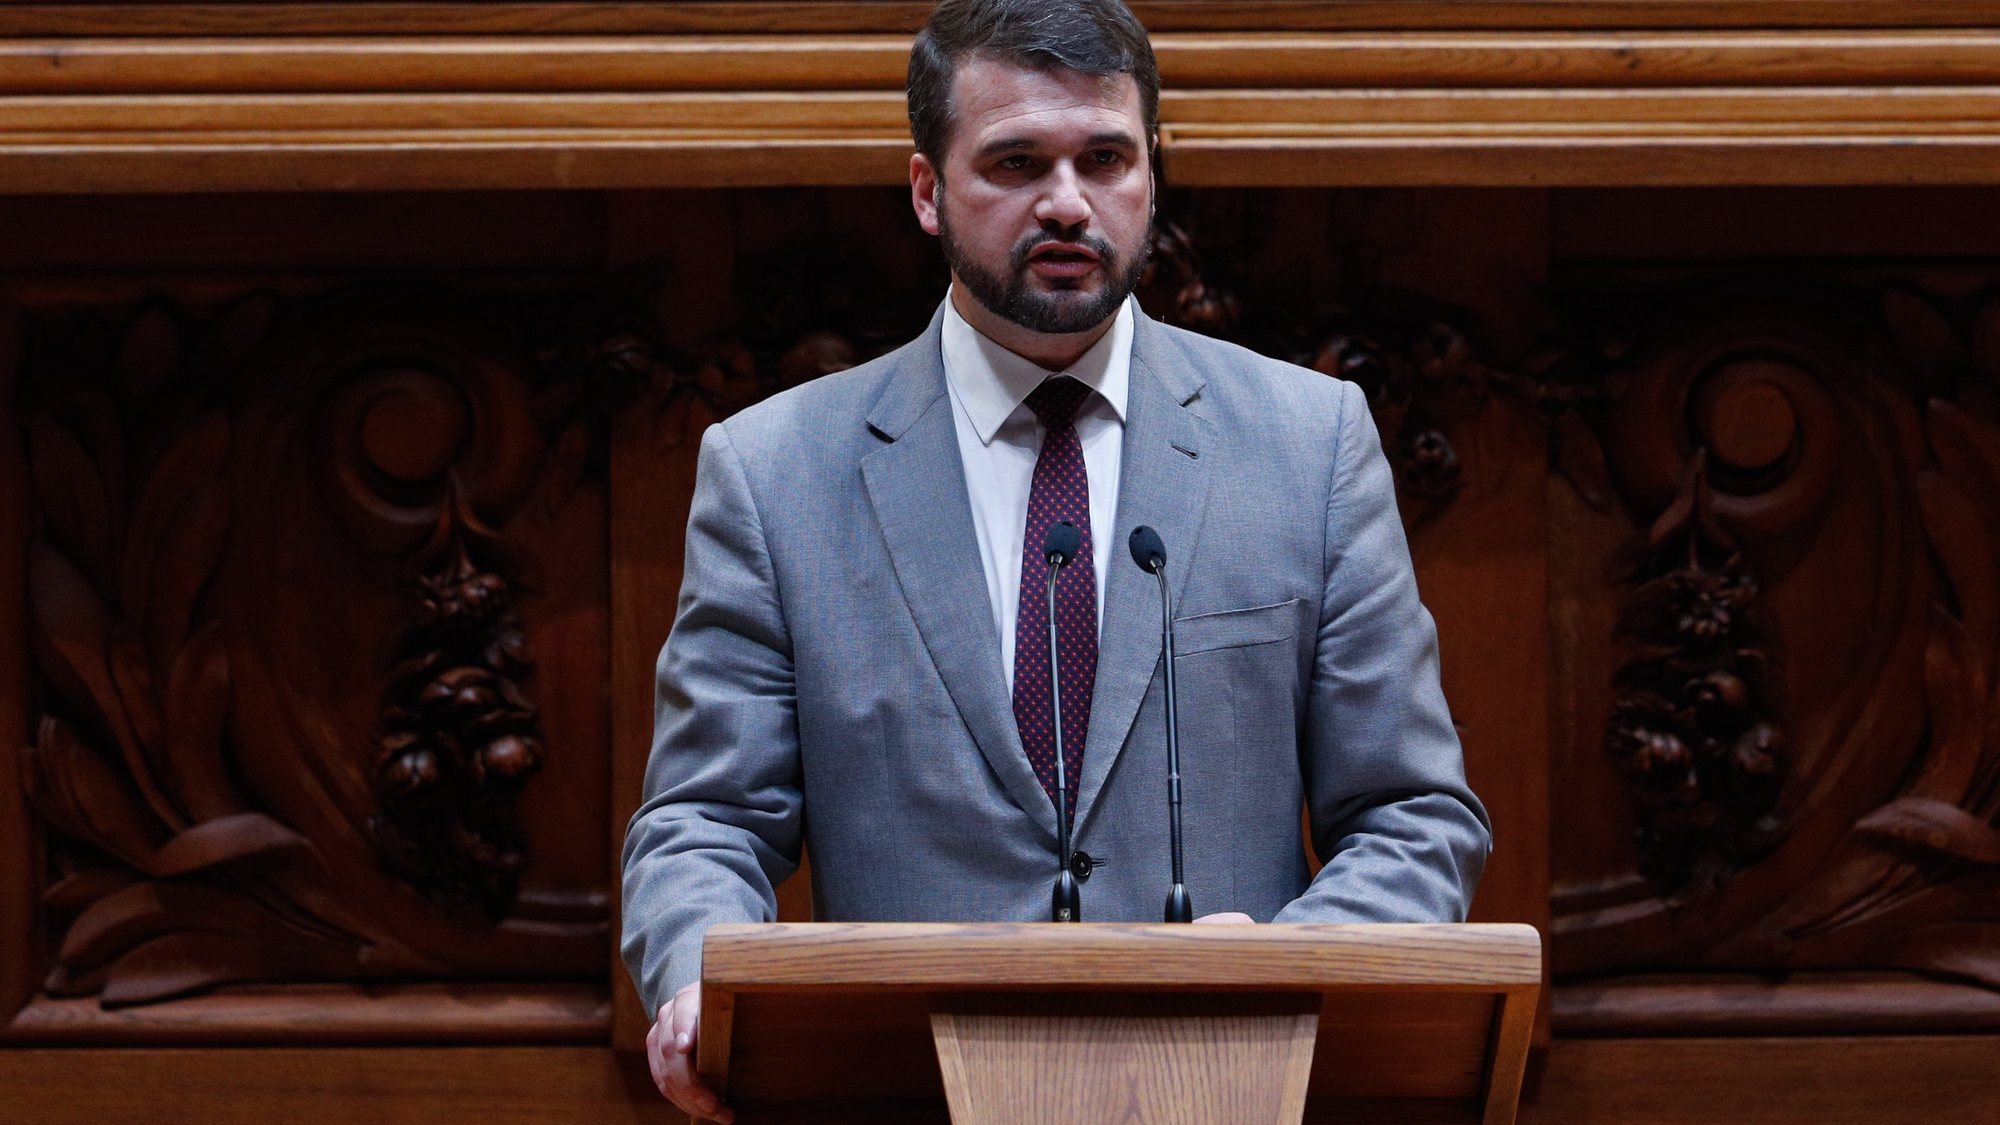 O deputado do Partido Socialista (PS), João Paulo Correia, intervém durante o debate na Assembleia da República, em Lisboa, 14 de outubro de 2020. ANTÓNIO COTRIM/LUSA